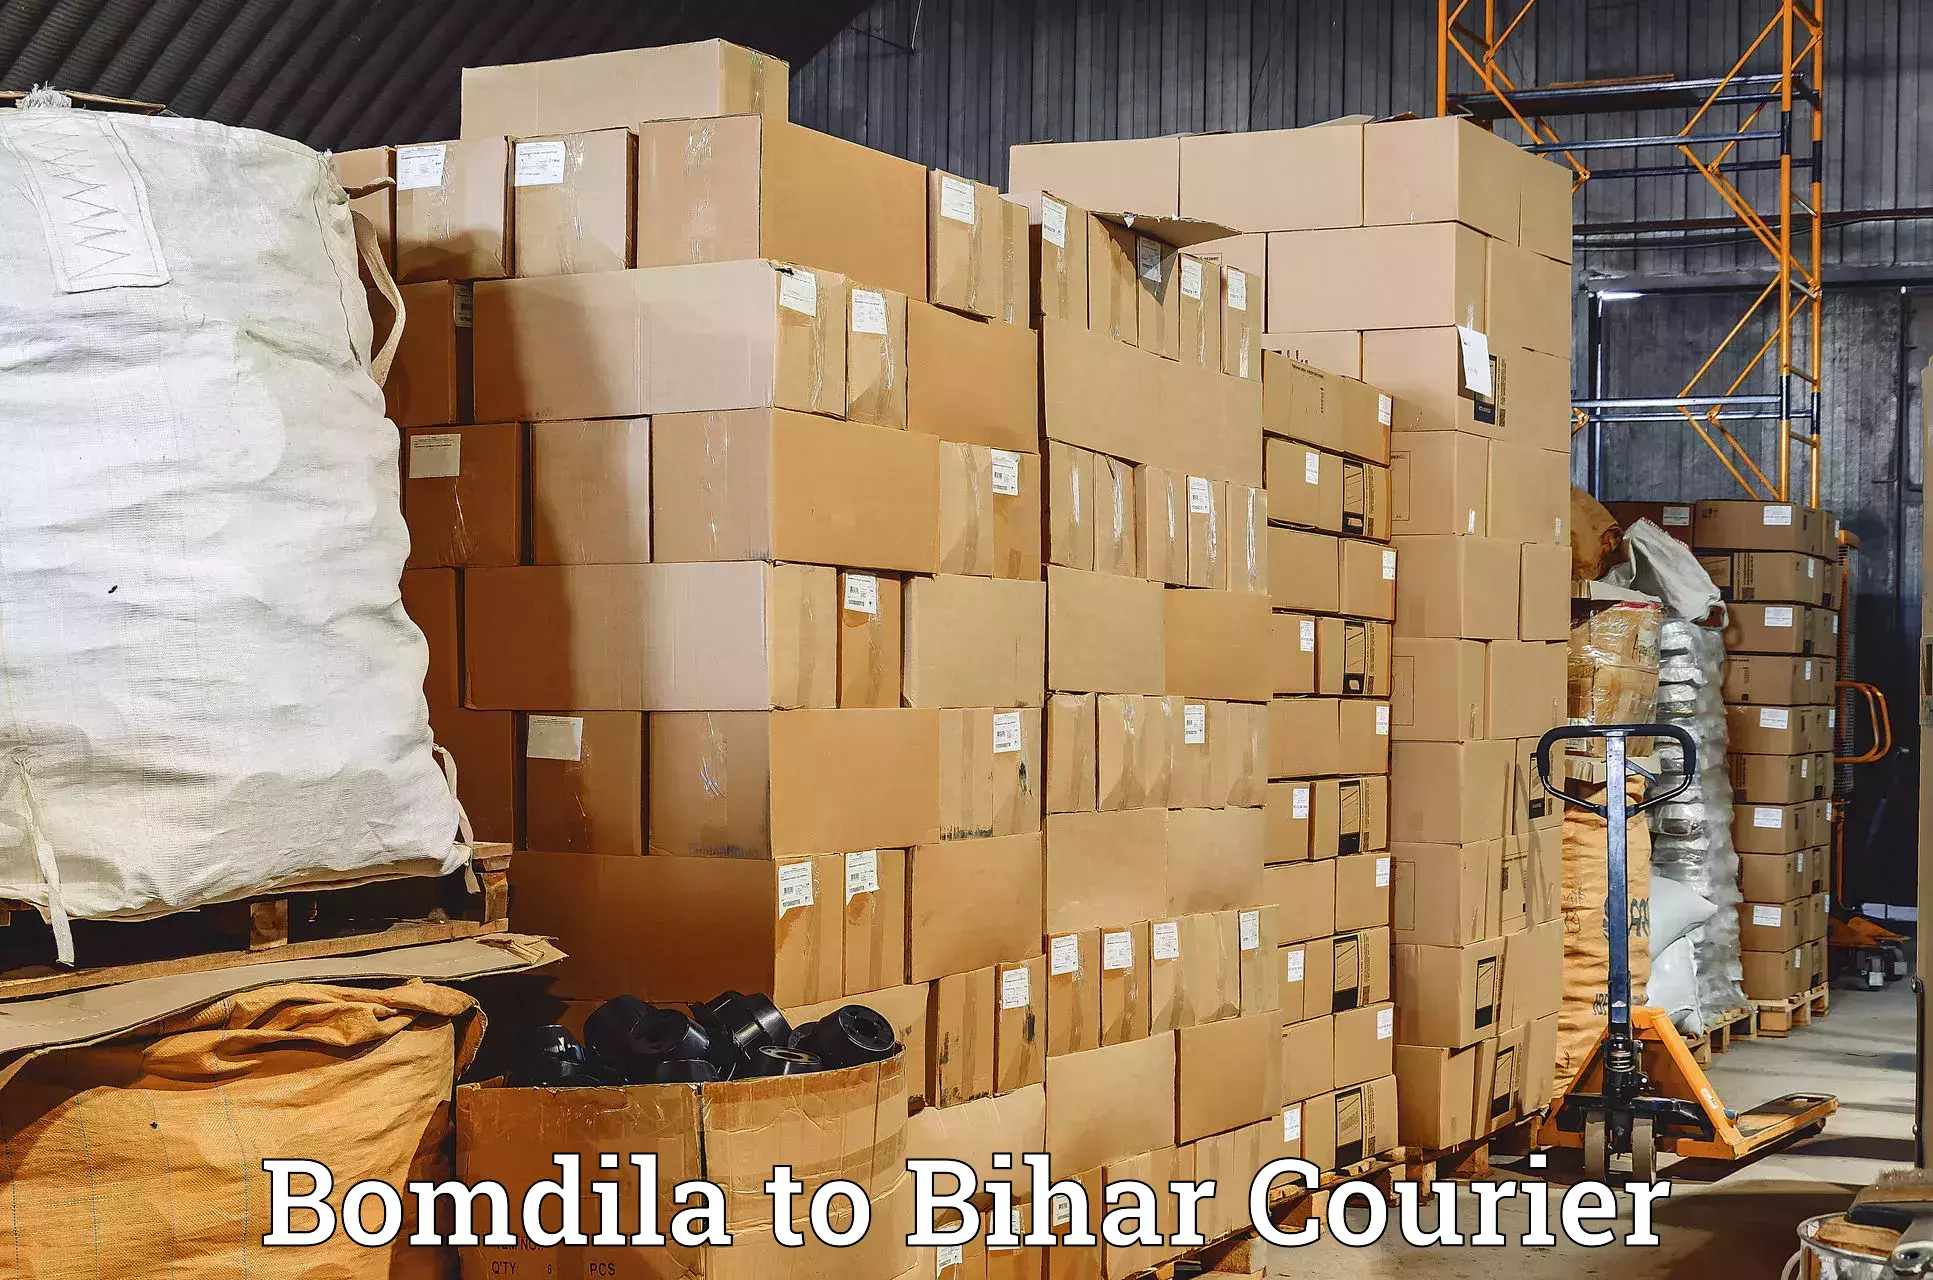 Express delivery capabilities Bomdila to Mahnar Bazar